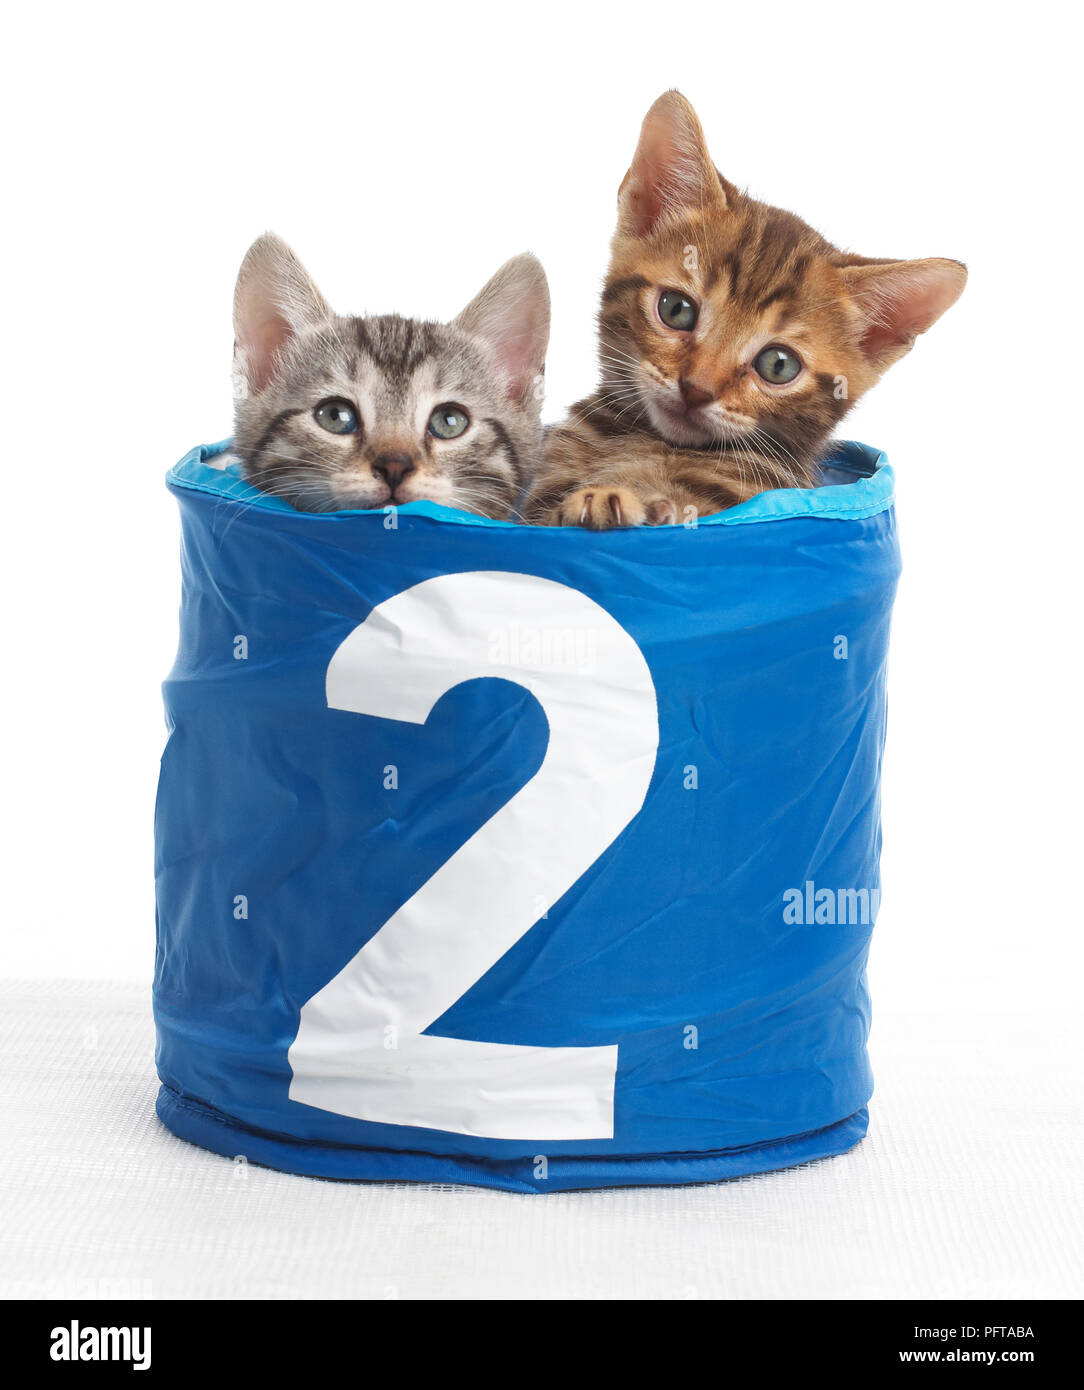 Les chatons dans le panier avec le numéro 2 sur l'avant, le Bengale et British shorthair chatons cross, 5 semaines Banque D'Images